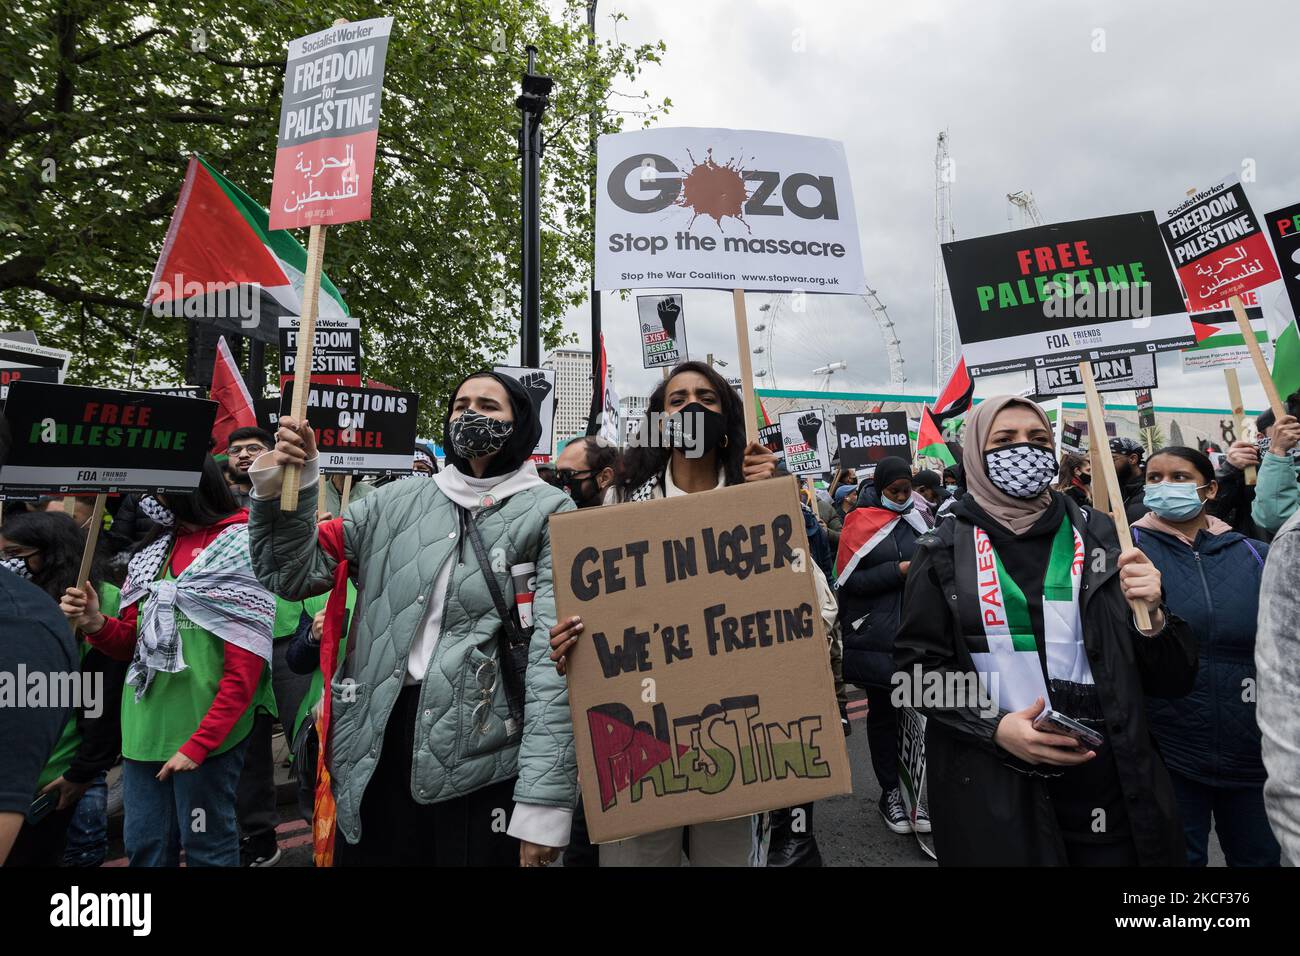 LONDRES, ROYAUME-UNI - 22 MAI 2021 : des dizaines de milliers de manifestants se rassemblent dans le centre de Londres pour une manifestation en faveur de la Palestine, le 22 mai 2021 à Londres, en Angleterre. Un cessez-le-feu entre Israël et la Palestine est entré en vigueur vendredi, après 11 jours de frappes aériennes qui ont fait plus de 250 morts, alors que le conflit s'est intensifié suite à des expulsions planifiées de familles palestiniennes de leurs foyers par des colons juifs dans le district de Sheikh Jarrah à Jérusalem-est et à des affrontements avec la sécurité Forces autour de la vieille ville pendant le ramadan. (Photo de Wiktor Szymanowicz/NurPhoto) Banque D'Images